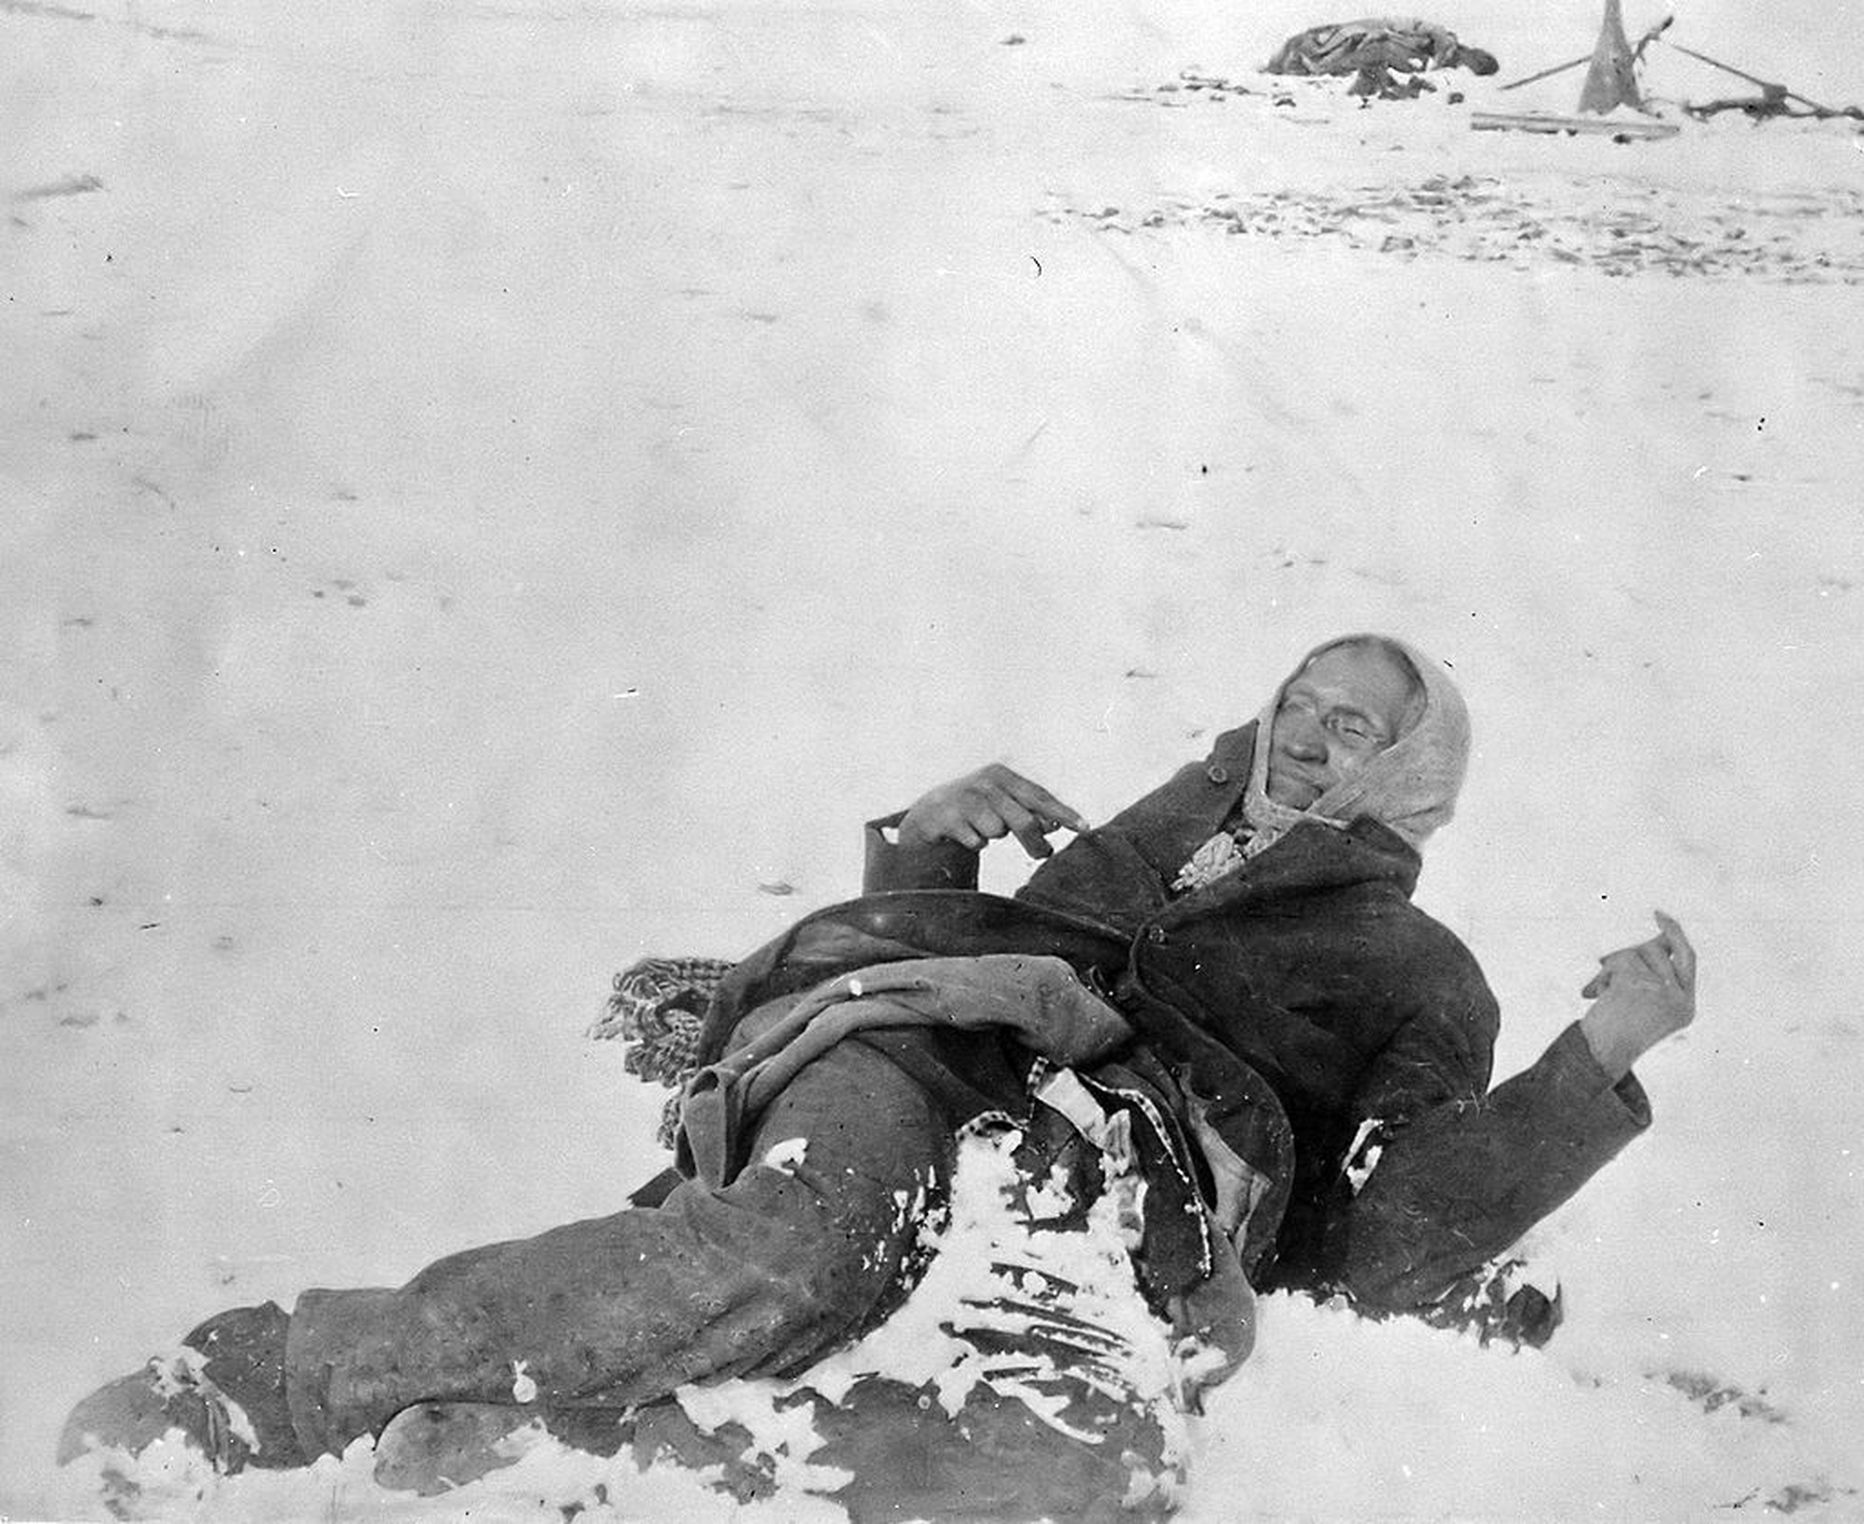 Wounded Knee veresaunas surma saanud indiaanipealik Tähniline Põder.